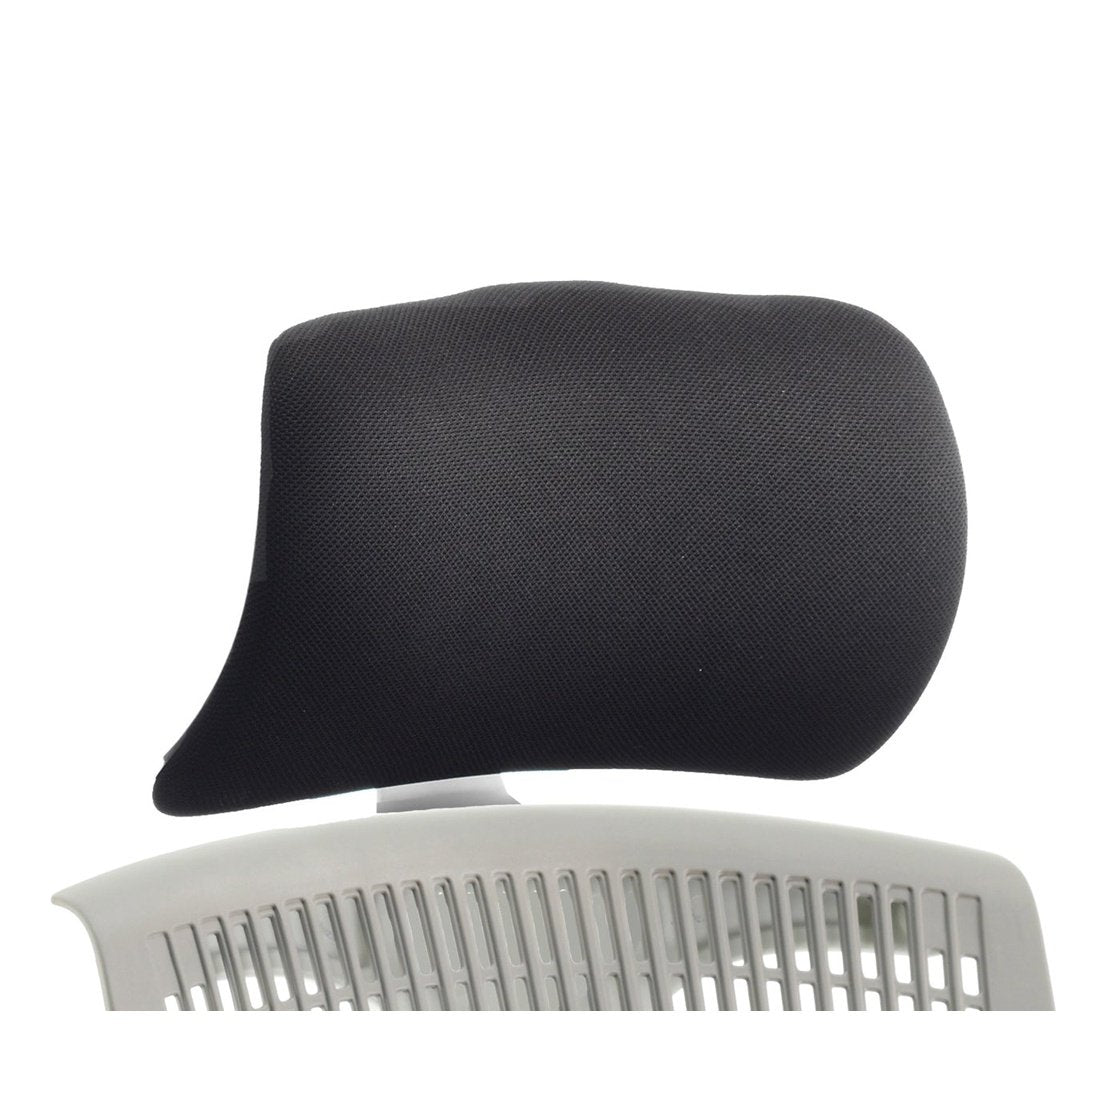 Flex Headrest Black Fabric - Adjustable, Soft Bonded Leather, Flat Packed, 8hr Usage, 2yr Mechanical & 1yr Fabric Warranty (0.7kg)